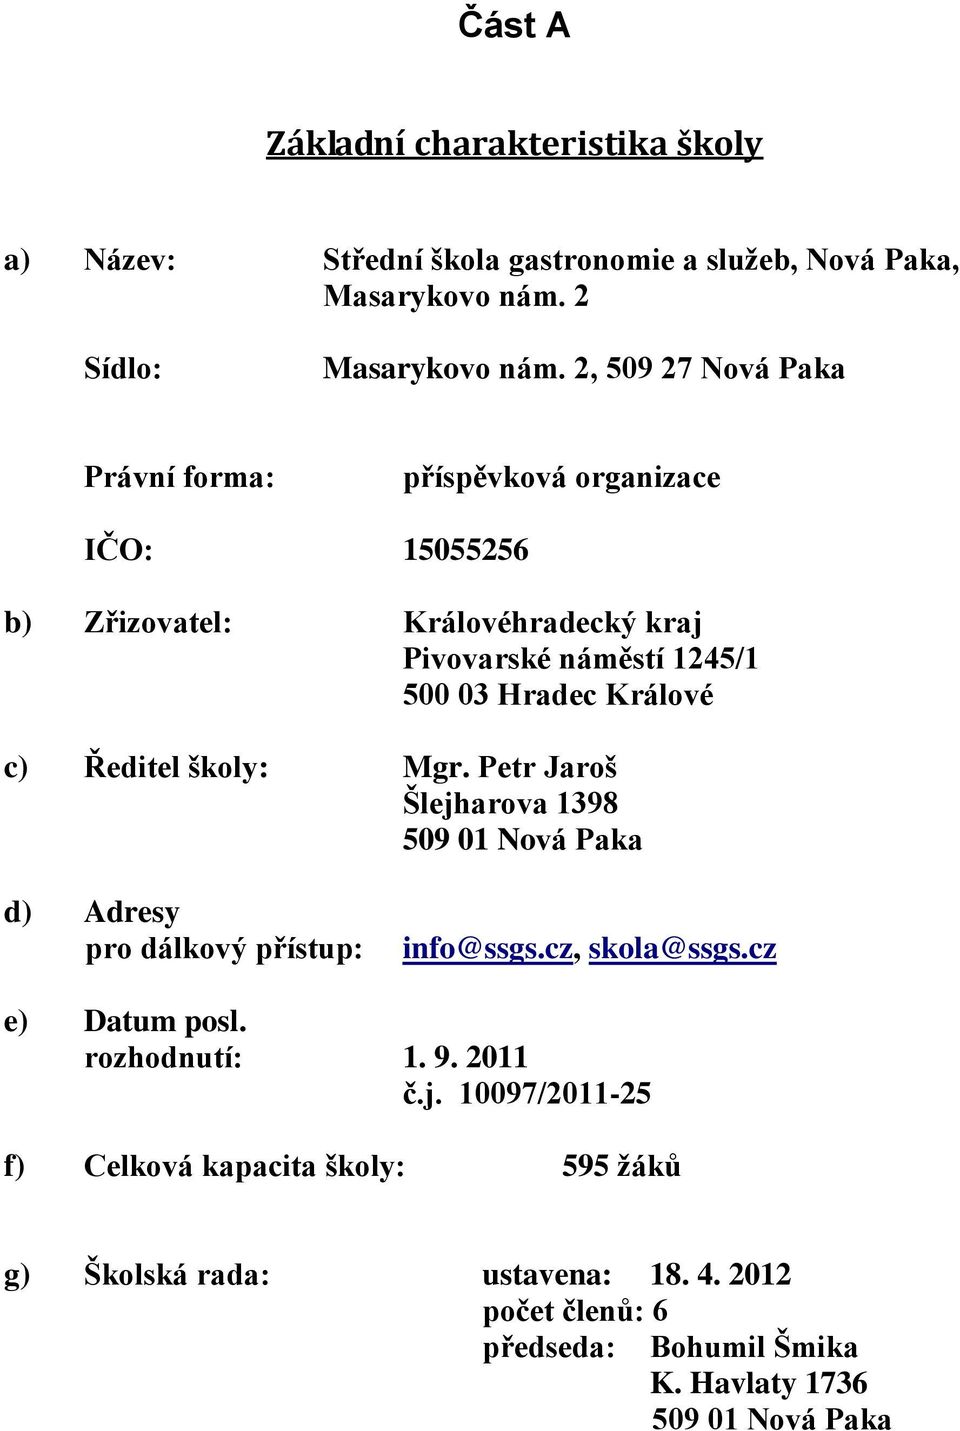 c) Ředitel školy: Mgr. Petr Jaroš Šlejharova 1398 509 01 Nová Paka d) Adresy pro dálkový přístup: info@ssgs.cz, skola@ssgs.cz e) Datum posl. rozhodnutí: 1.